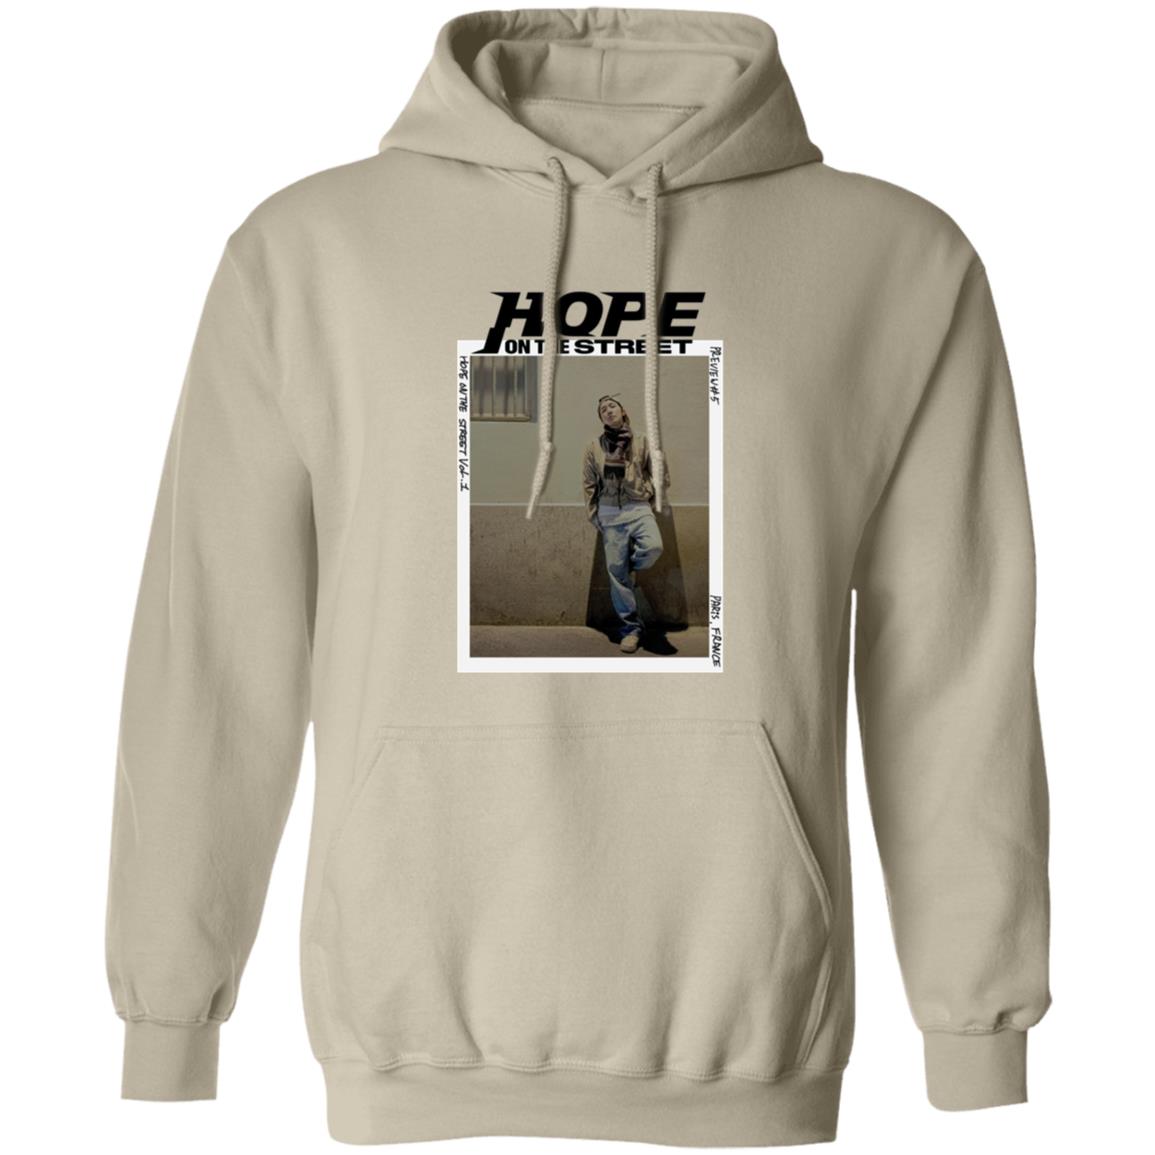 J-Hope Hope on the Street Hoodie